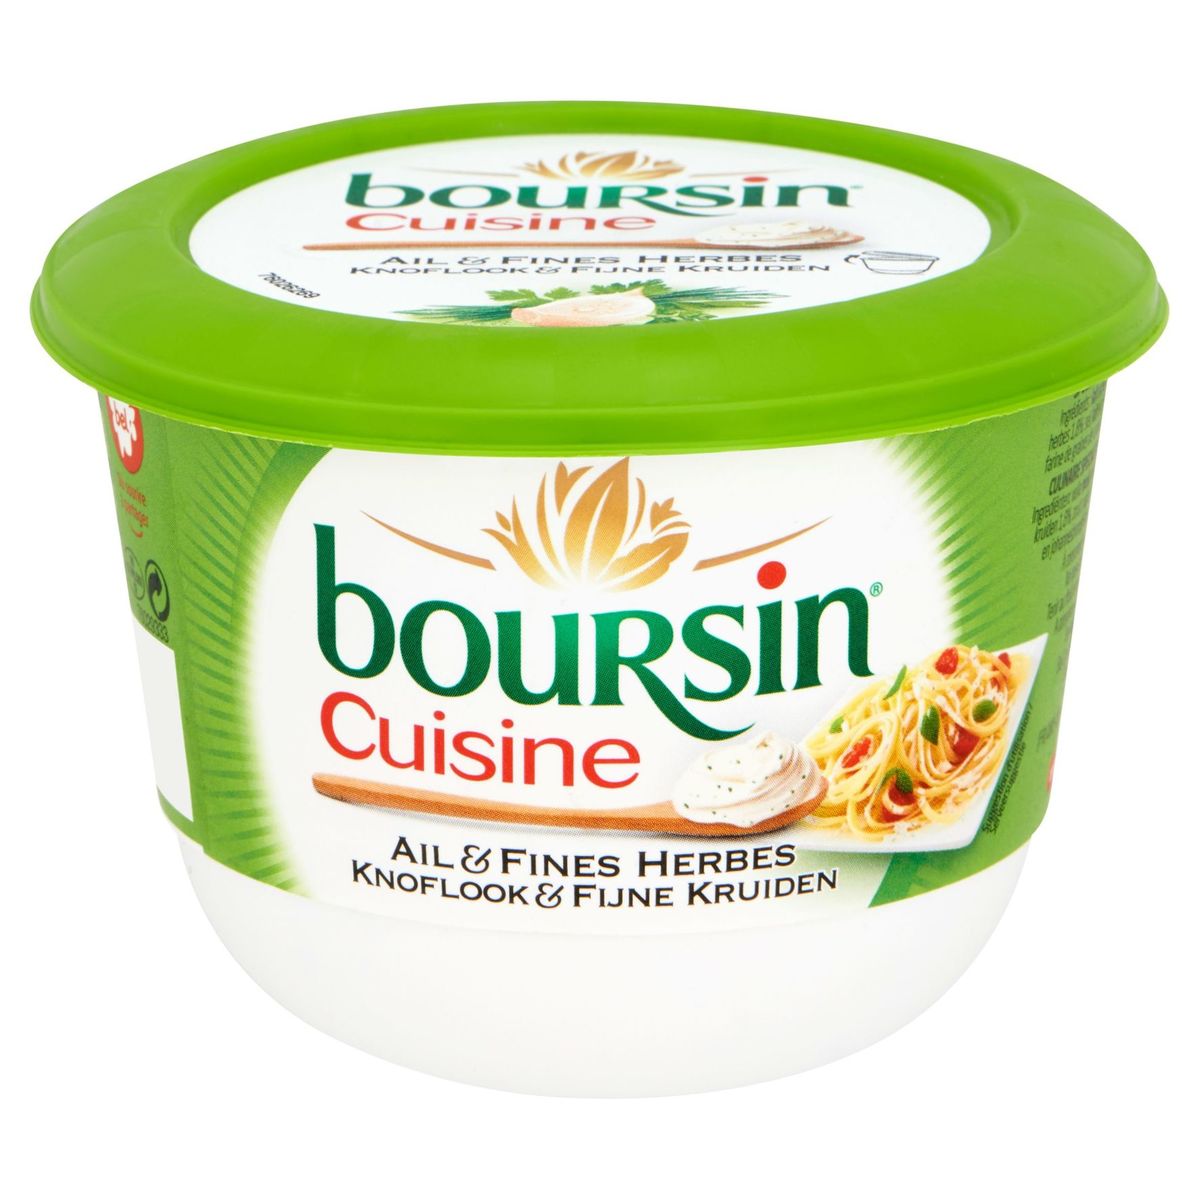 Boursin Cuisine Ail & Fines Herbes 240 g